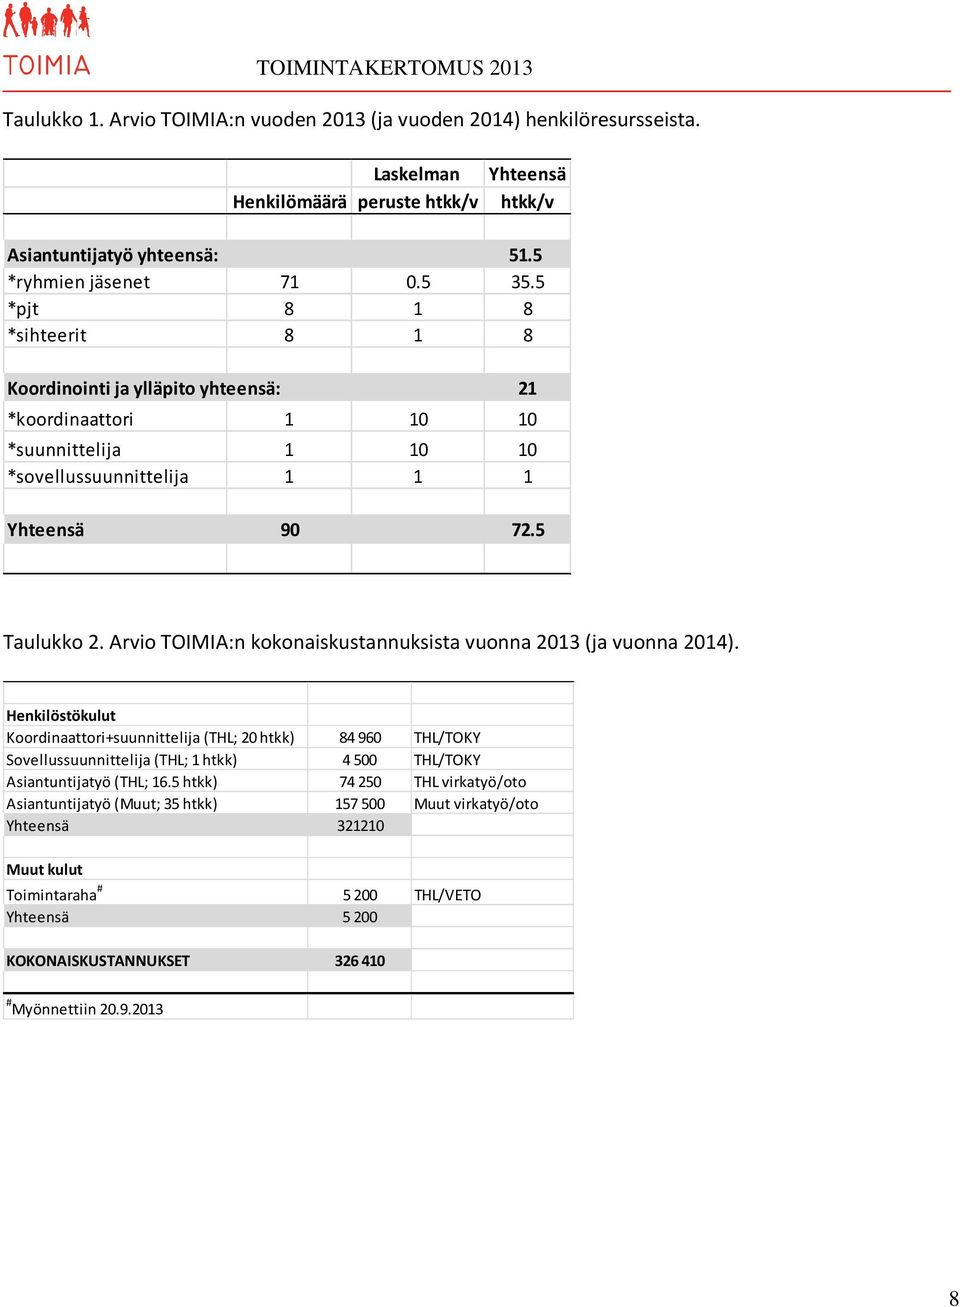 Arvio TOIMIA:n kokonaiskustannuksista vuonna 2013 (ja vuonna 2014).